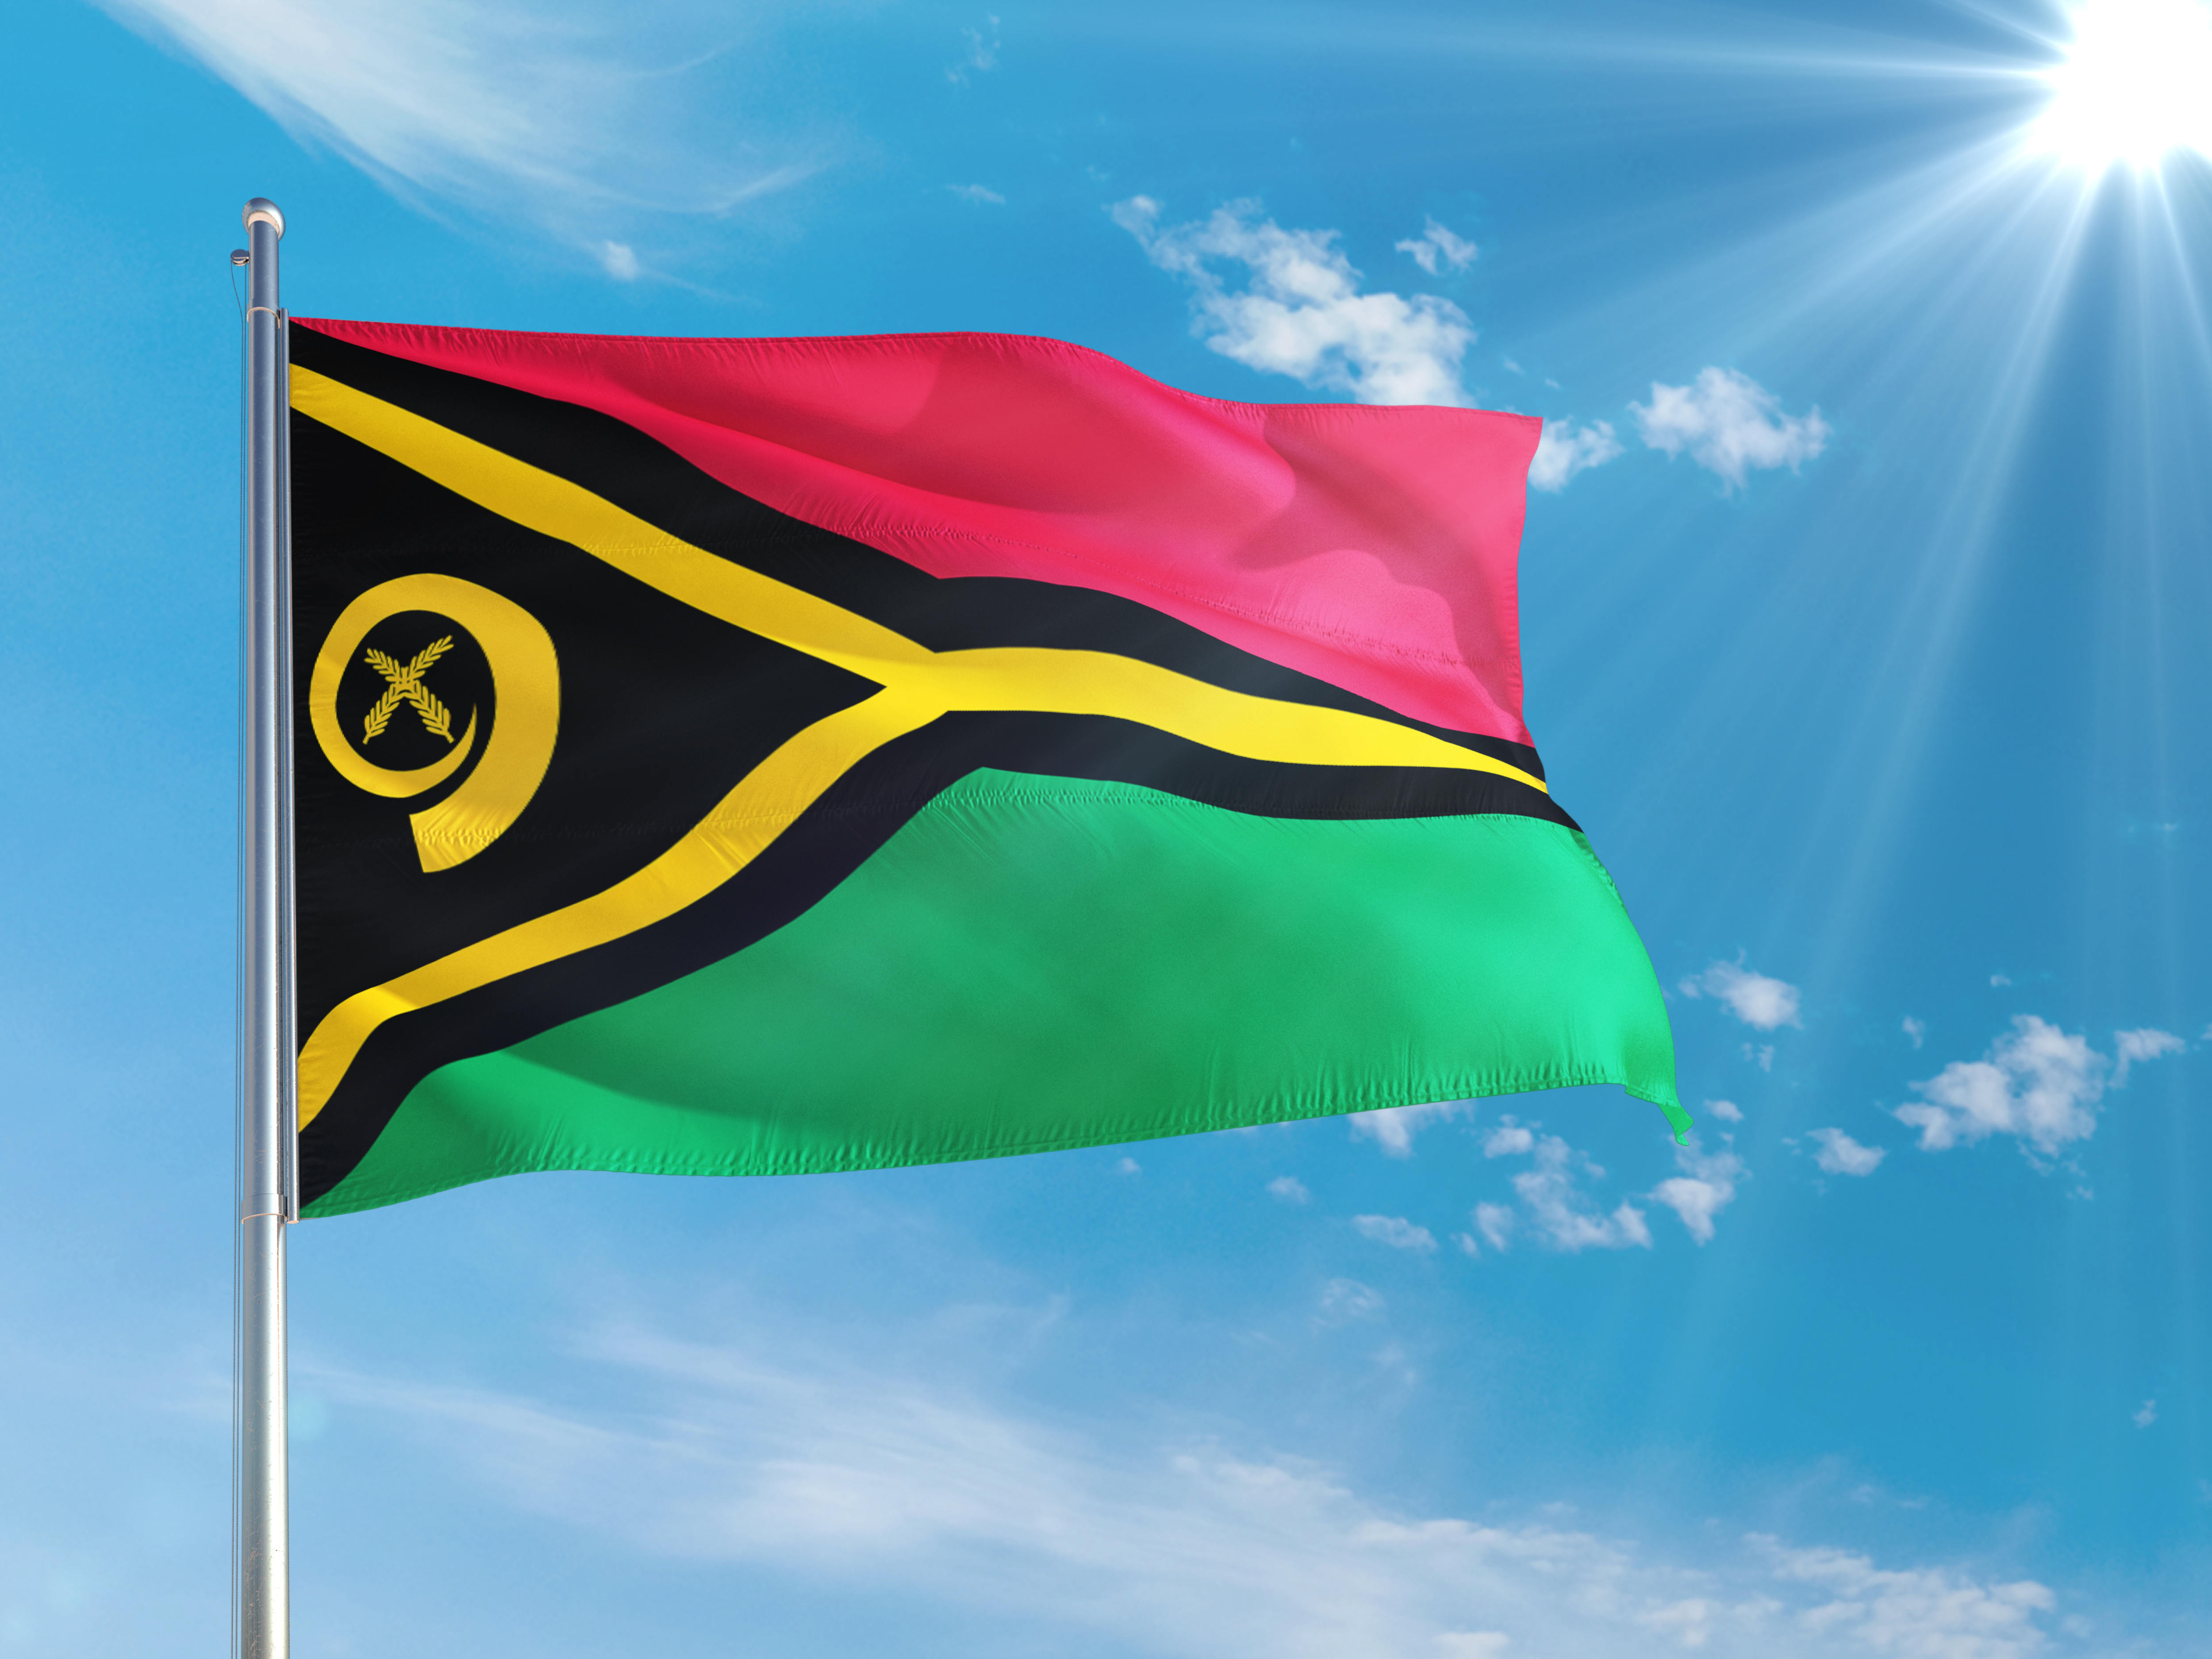 Флаг Вануату, страны, с которой европейская комиссия приостановит действие безвизового режима